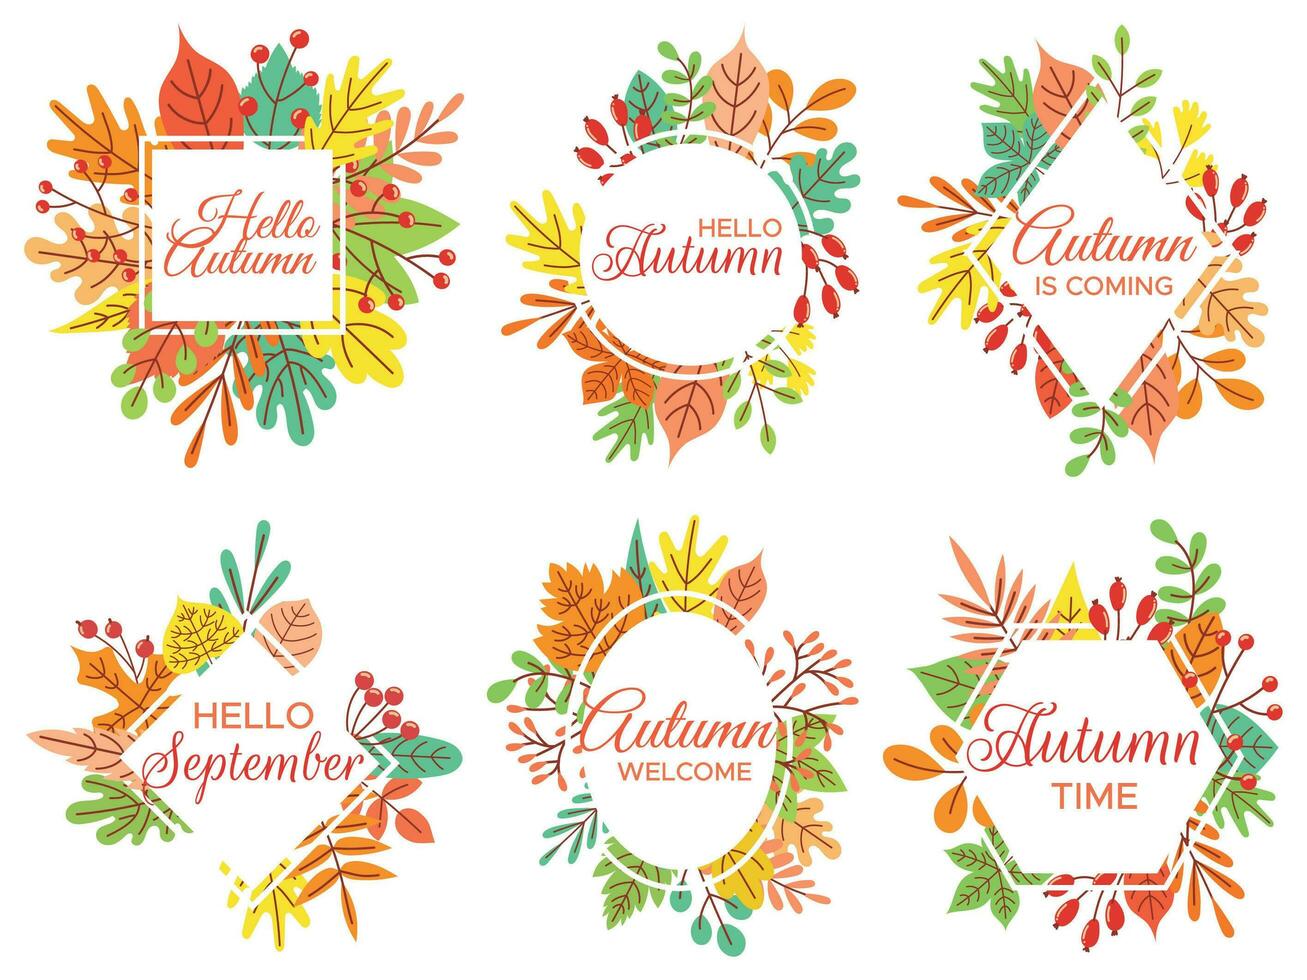 Hallo herfst. Welkom september, herfst- gedaald bladeren kader en geel blad belettering vector illustratie reeks